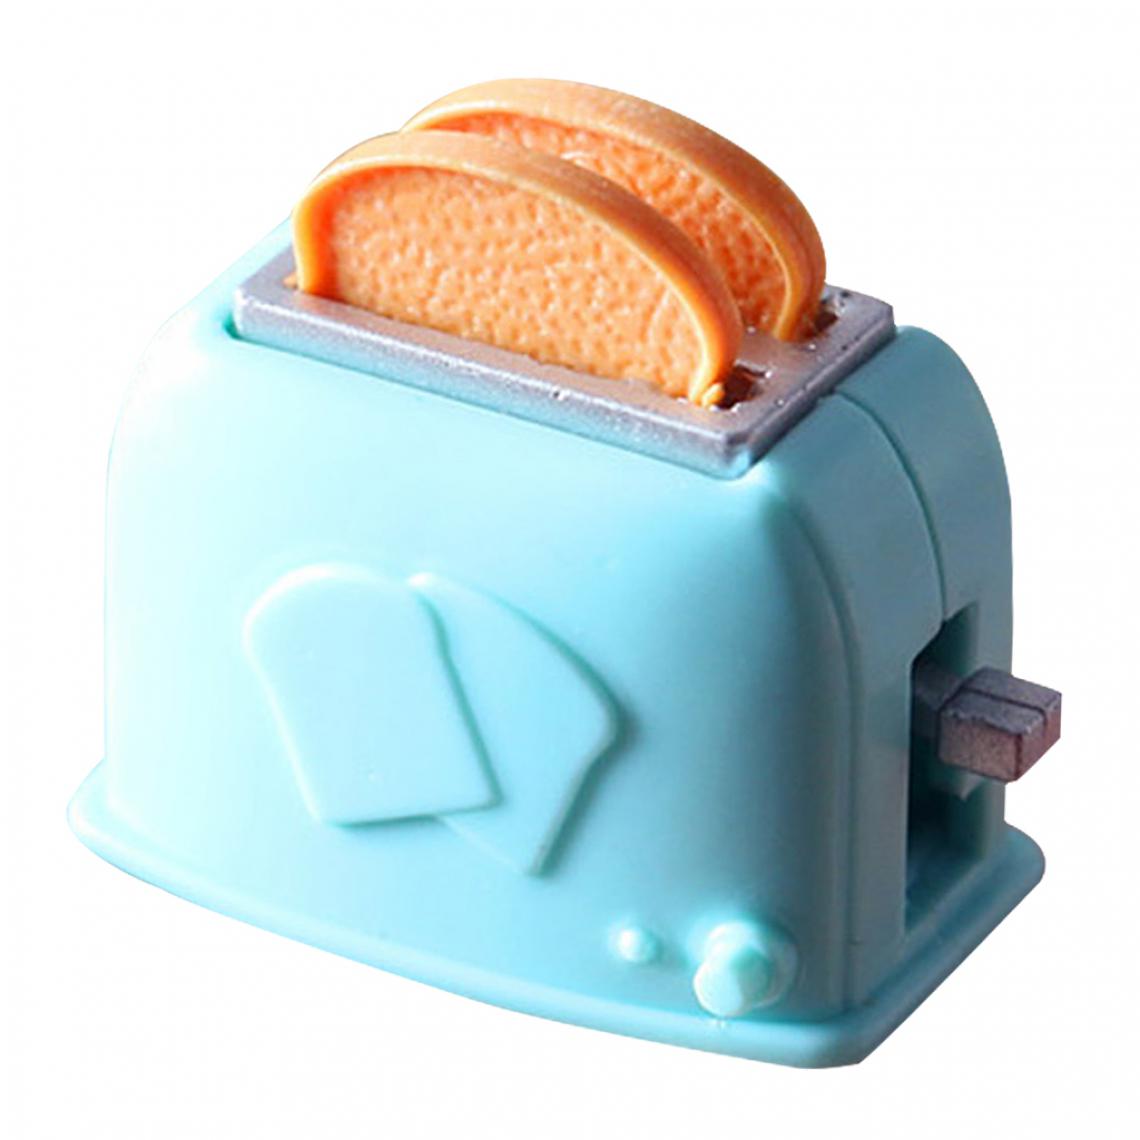 marque generique - 1:12 Dollhouse Kitchen Appliance Mini Ustensiles De Cuisine Miniaturess Accessory Toaster - Maisons de poupées